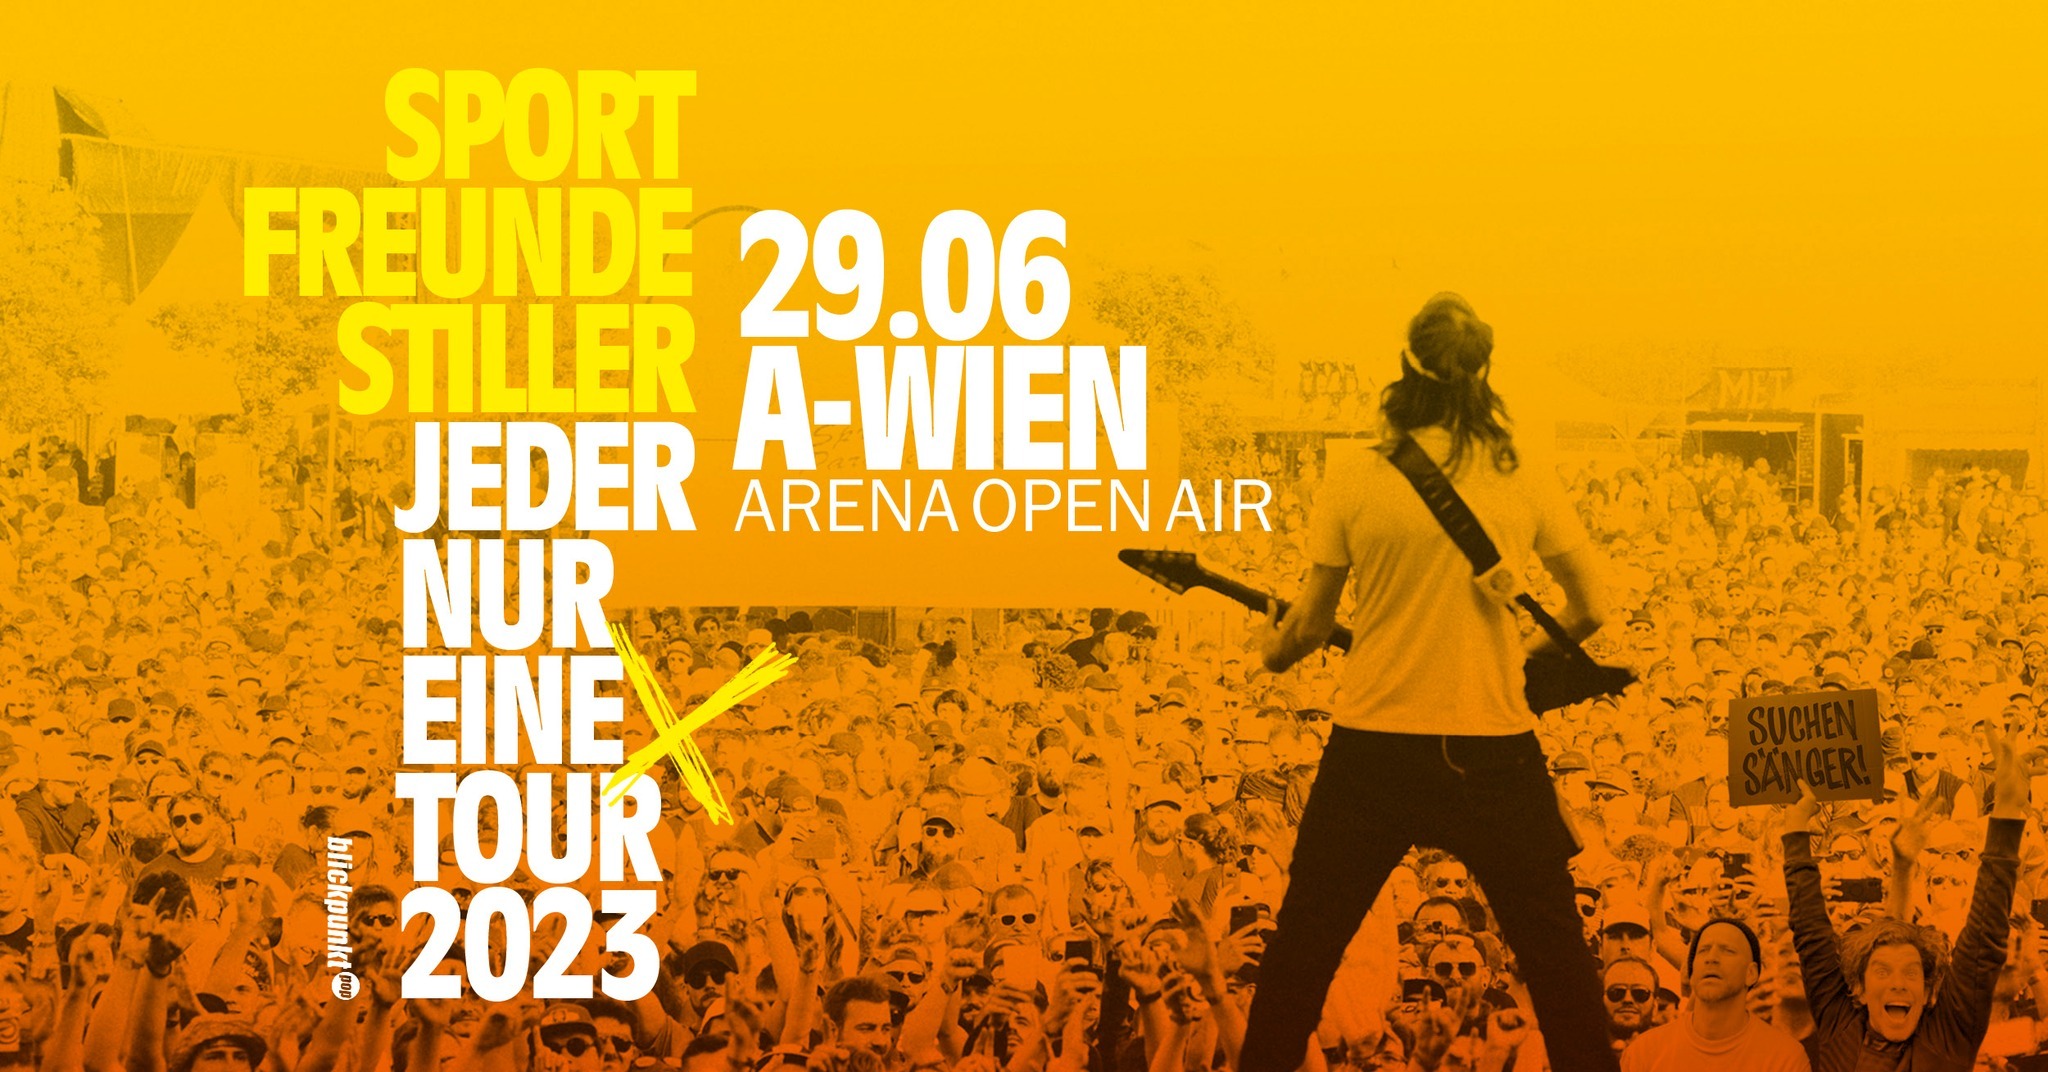 Sportfreunde Stiller am 29. June 2023 @ Arena Wien - Open Air.